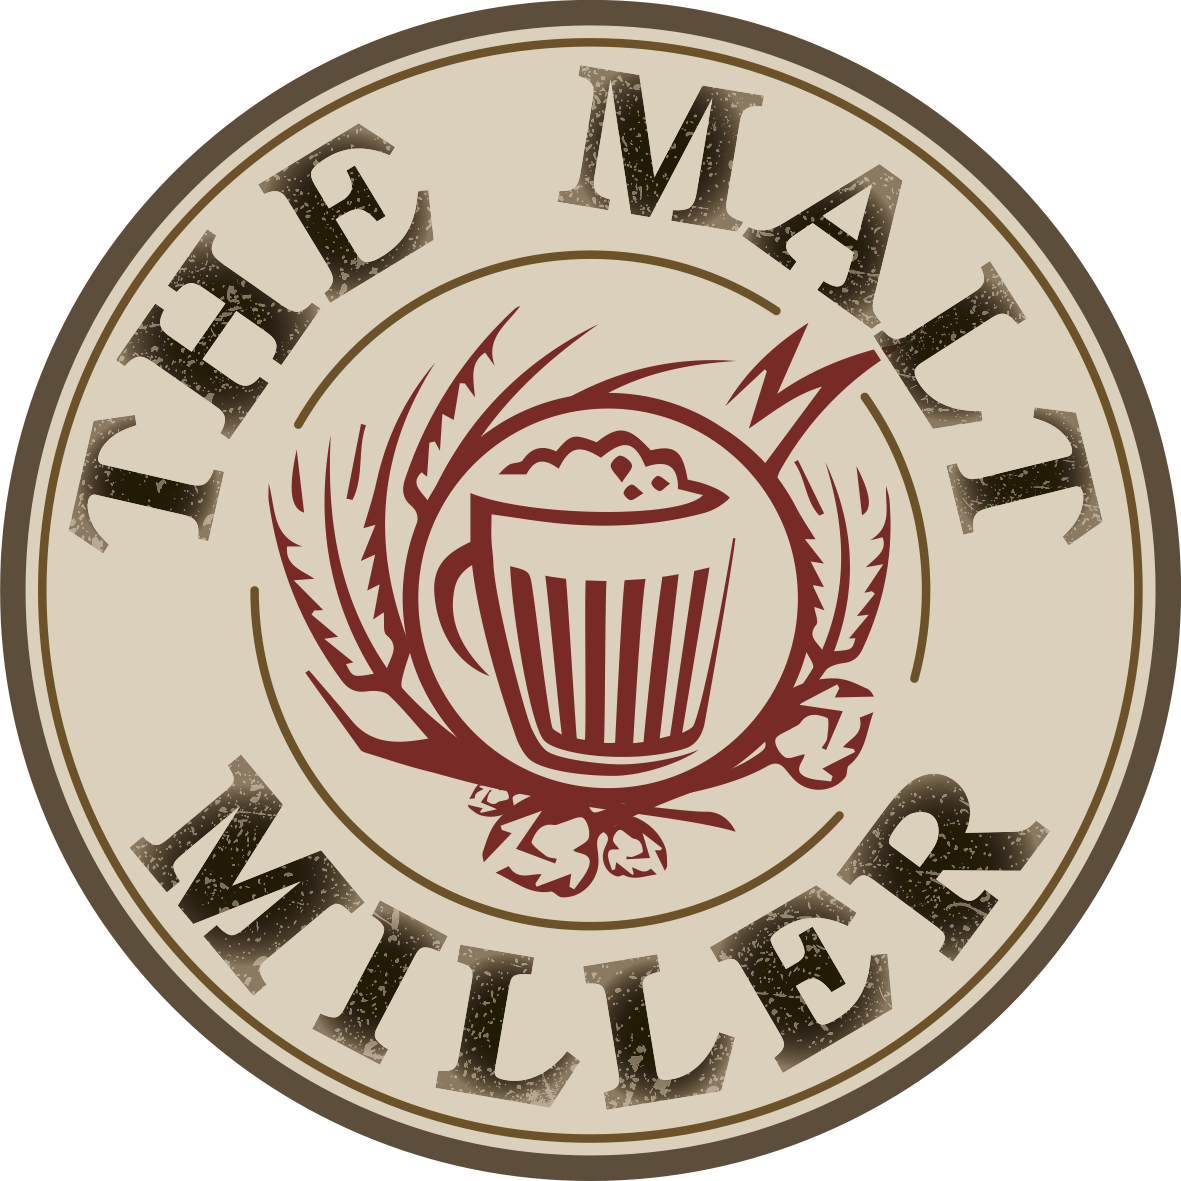 logo for The Malt Miller Ltd